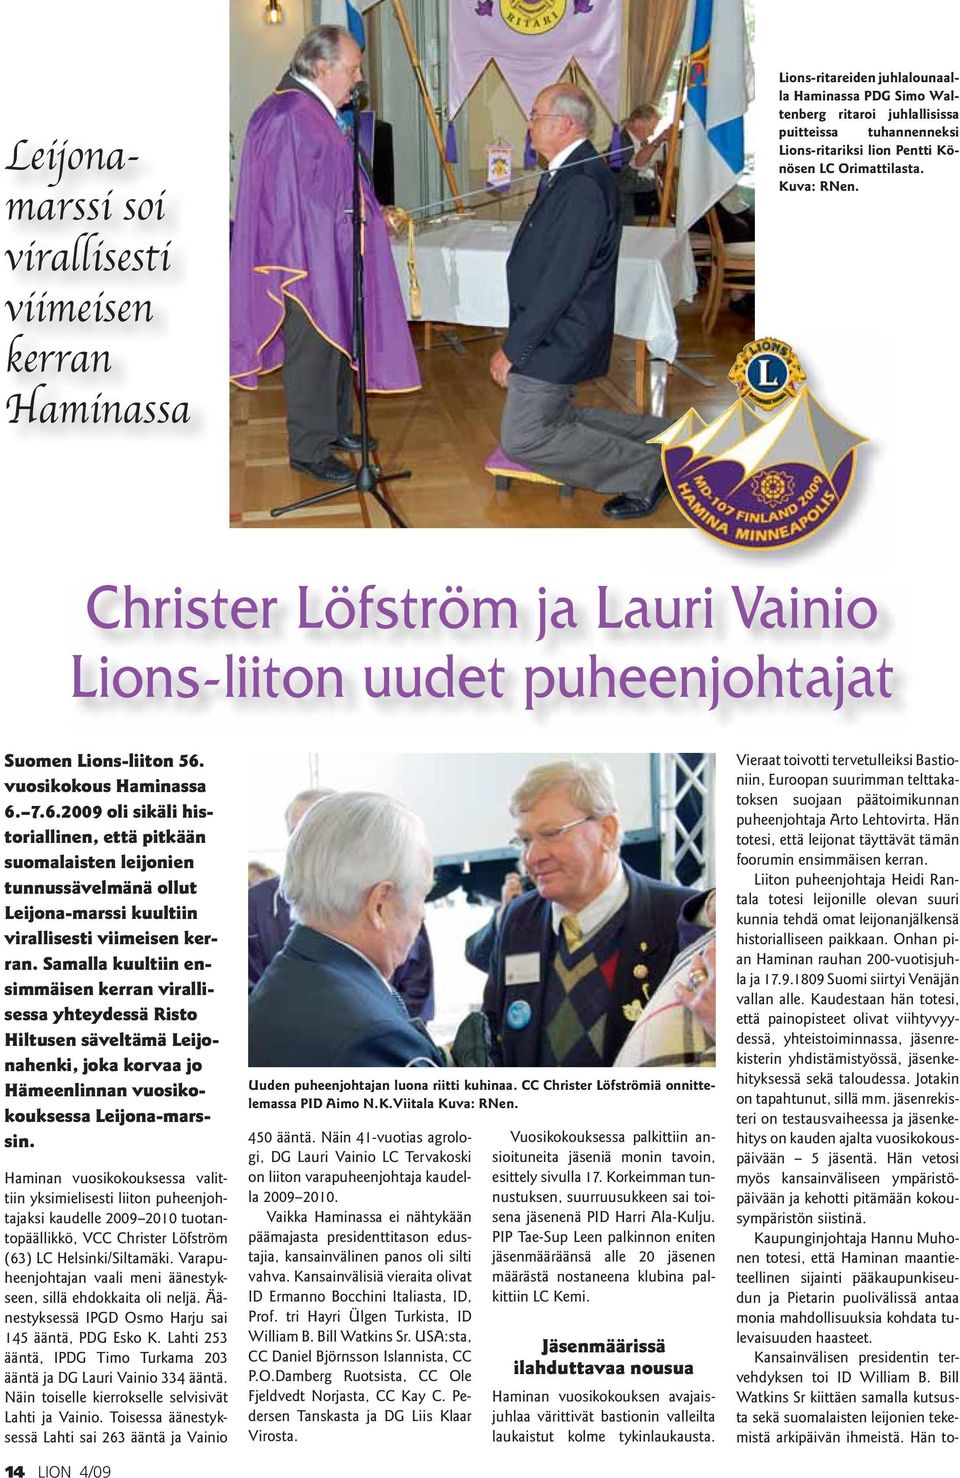 vuosikokous Haminassa 6. 7.6.2009 oli sikäli historiallinen, että pitkään suomalaisten leijonien tunnussävelmänä ollut Leijona-marssi kuultiin virallisesti viimeisen kerran.